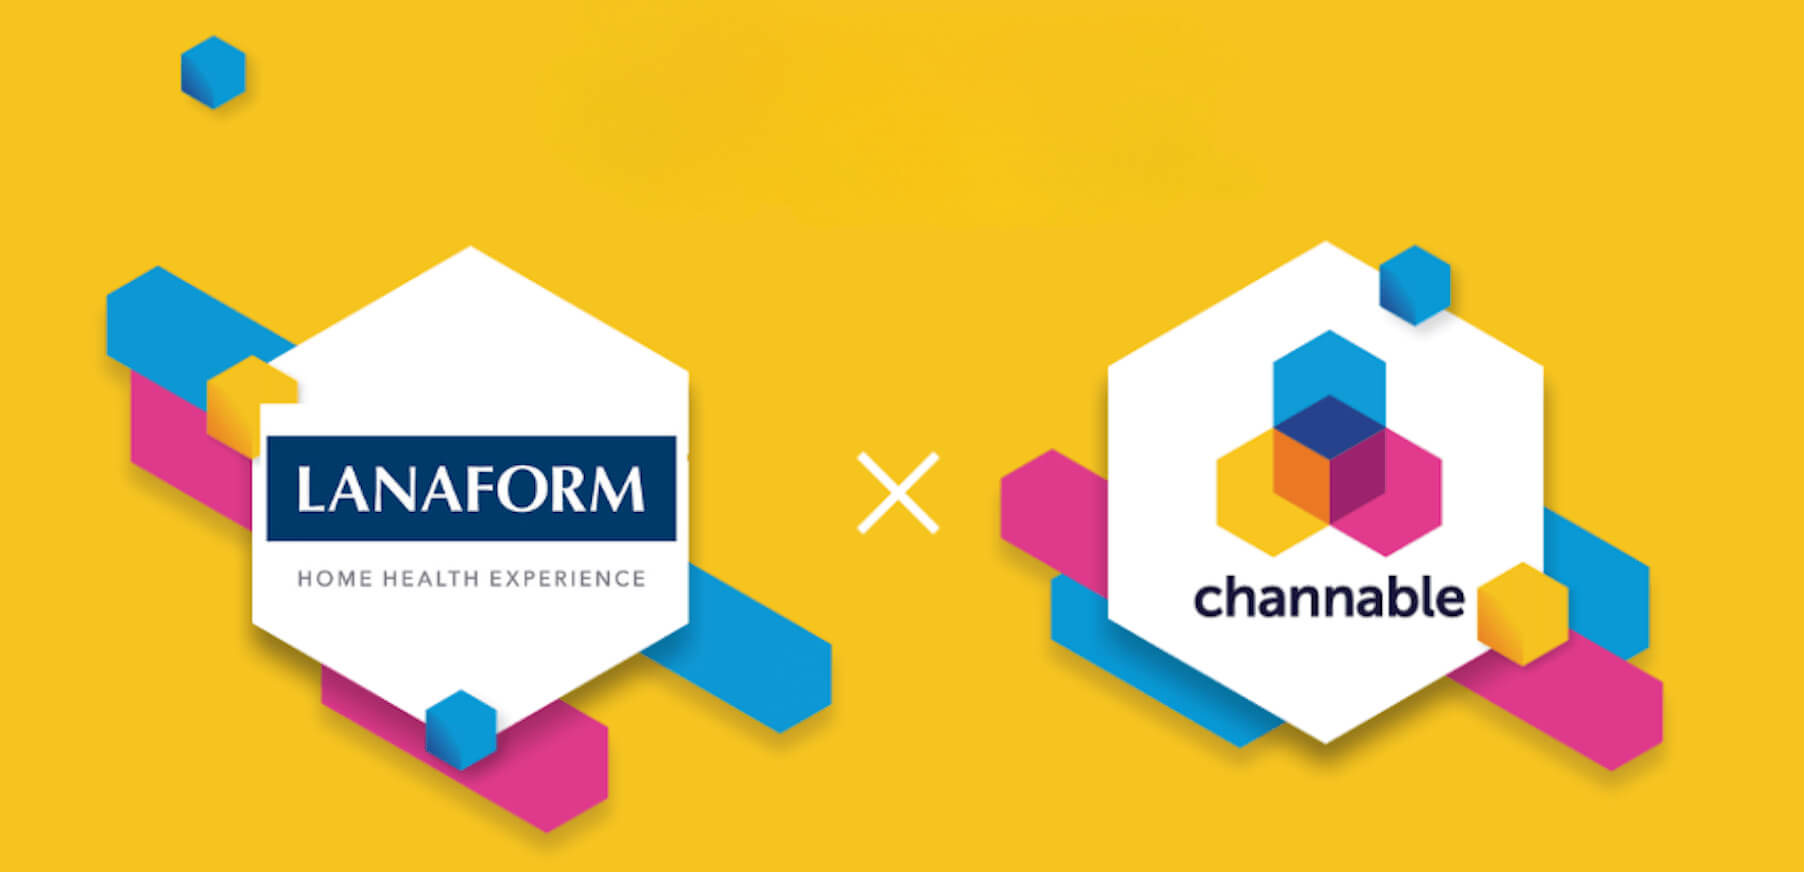 Het lanaform logo samen met het Channable logo om te tonen dat ze iets samen doen.